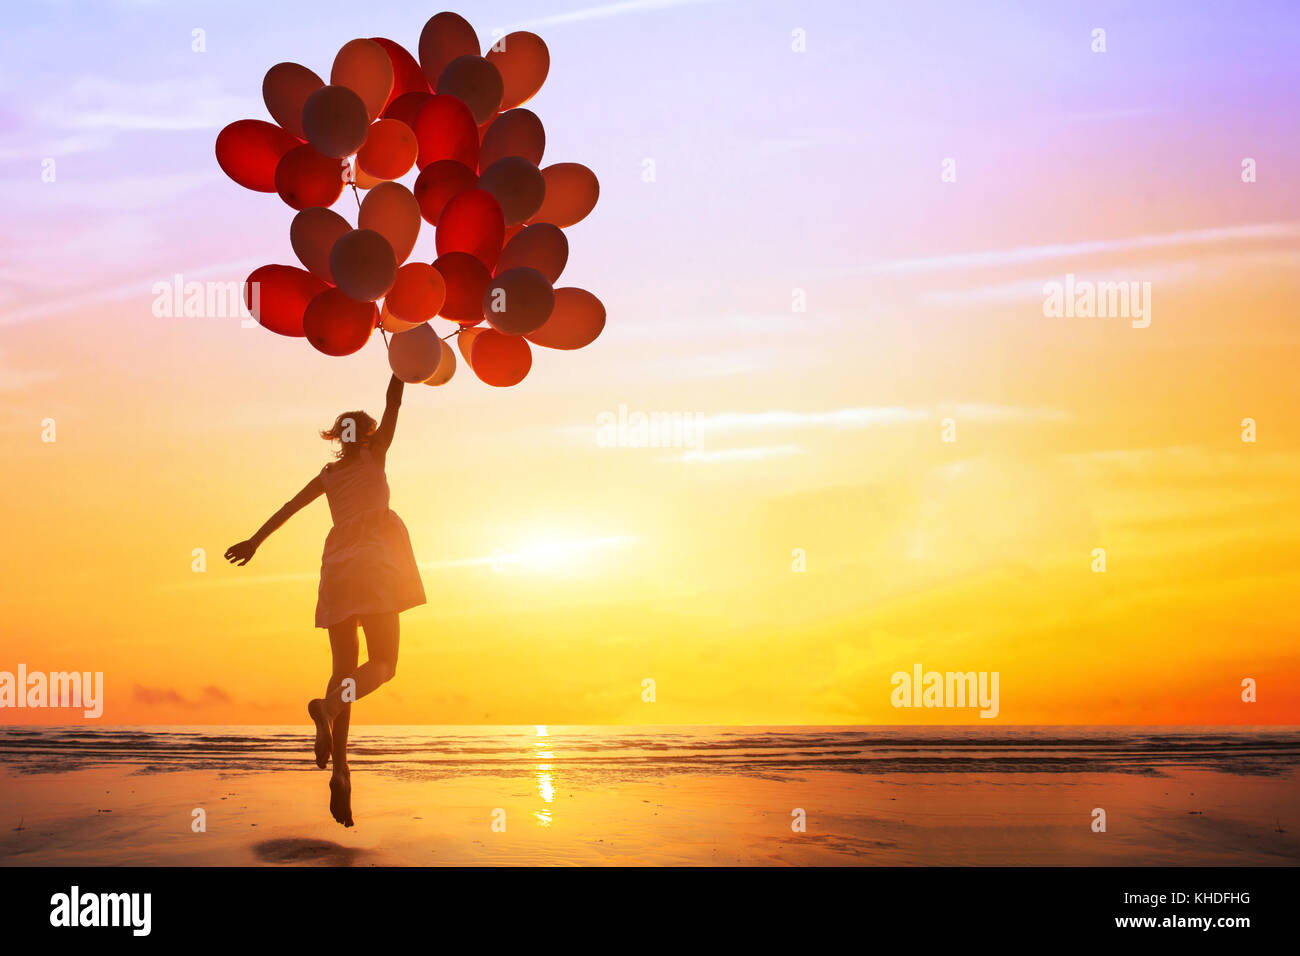 La felicità o il concetto di sogno, silhouette di donna felice jumping con palloncini multicolori al tramonto sulla spiaggia Foto Stock